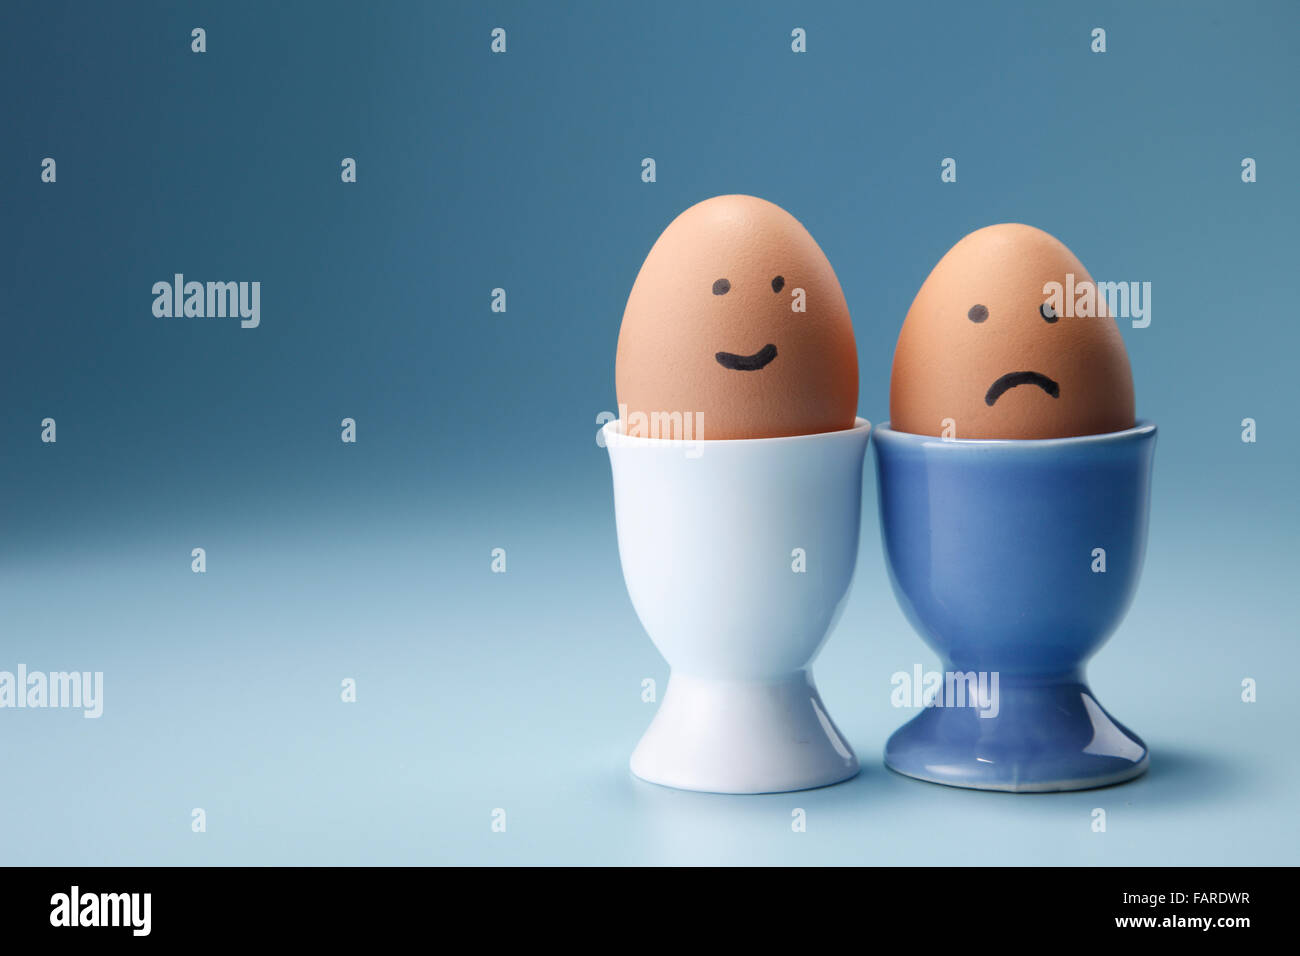 Ei mit lustigem Gesicht auf der Eierbecher Stockfotografie - Alamy